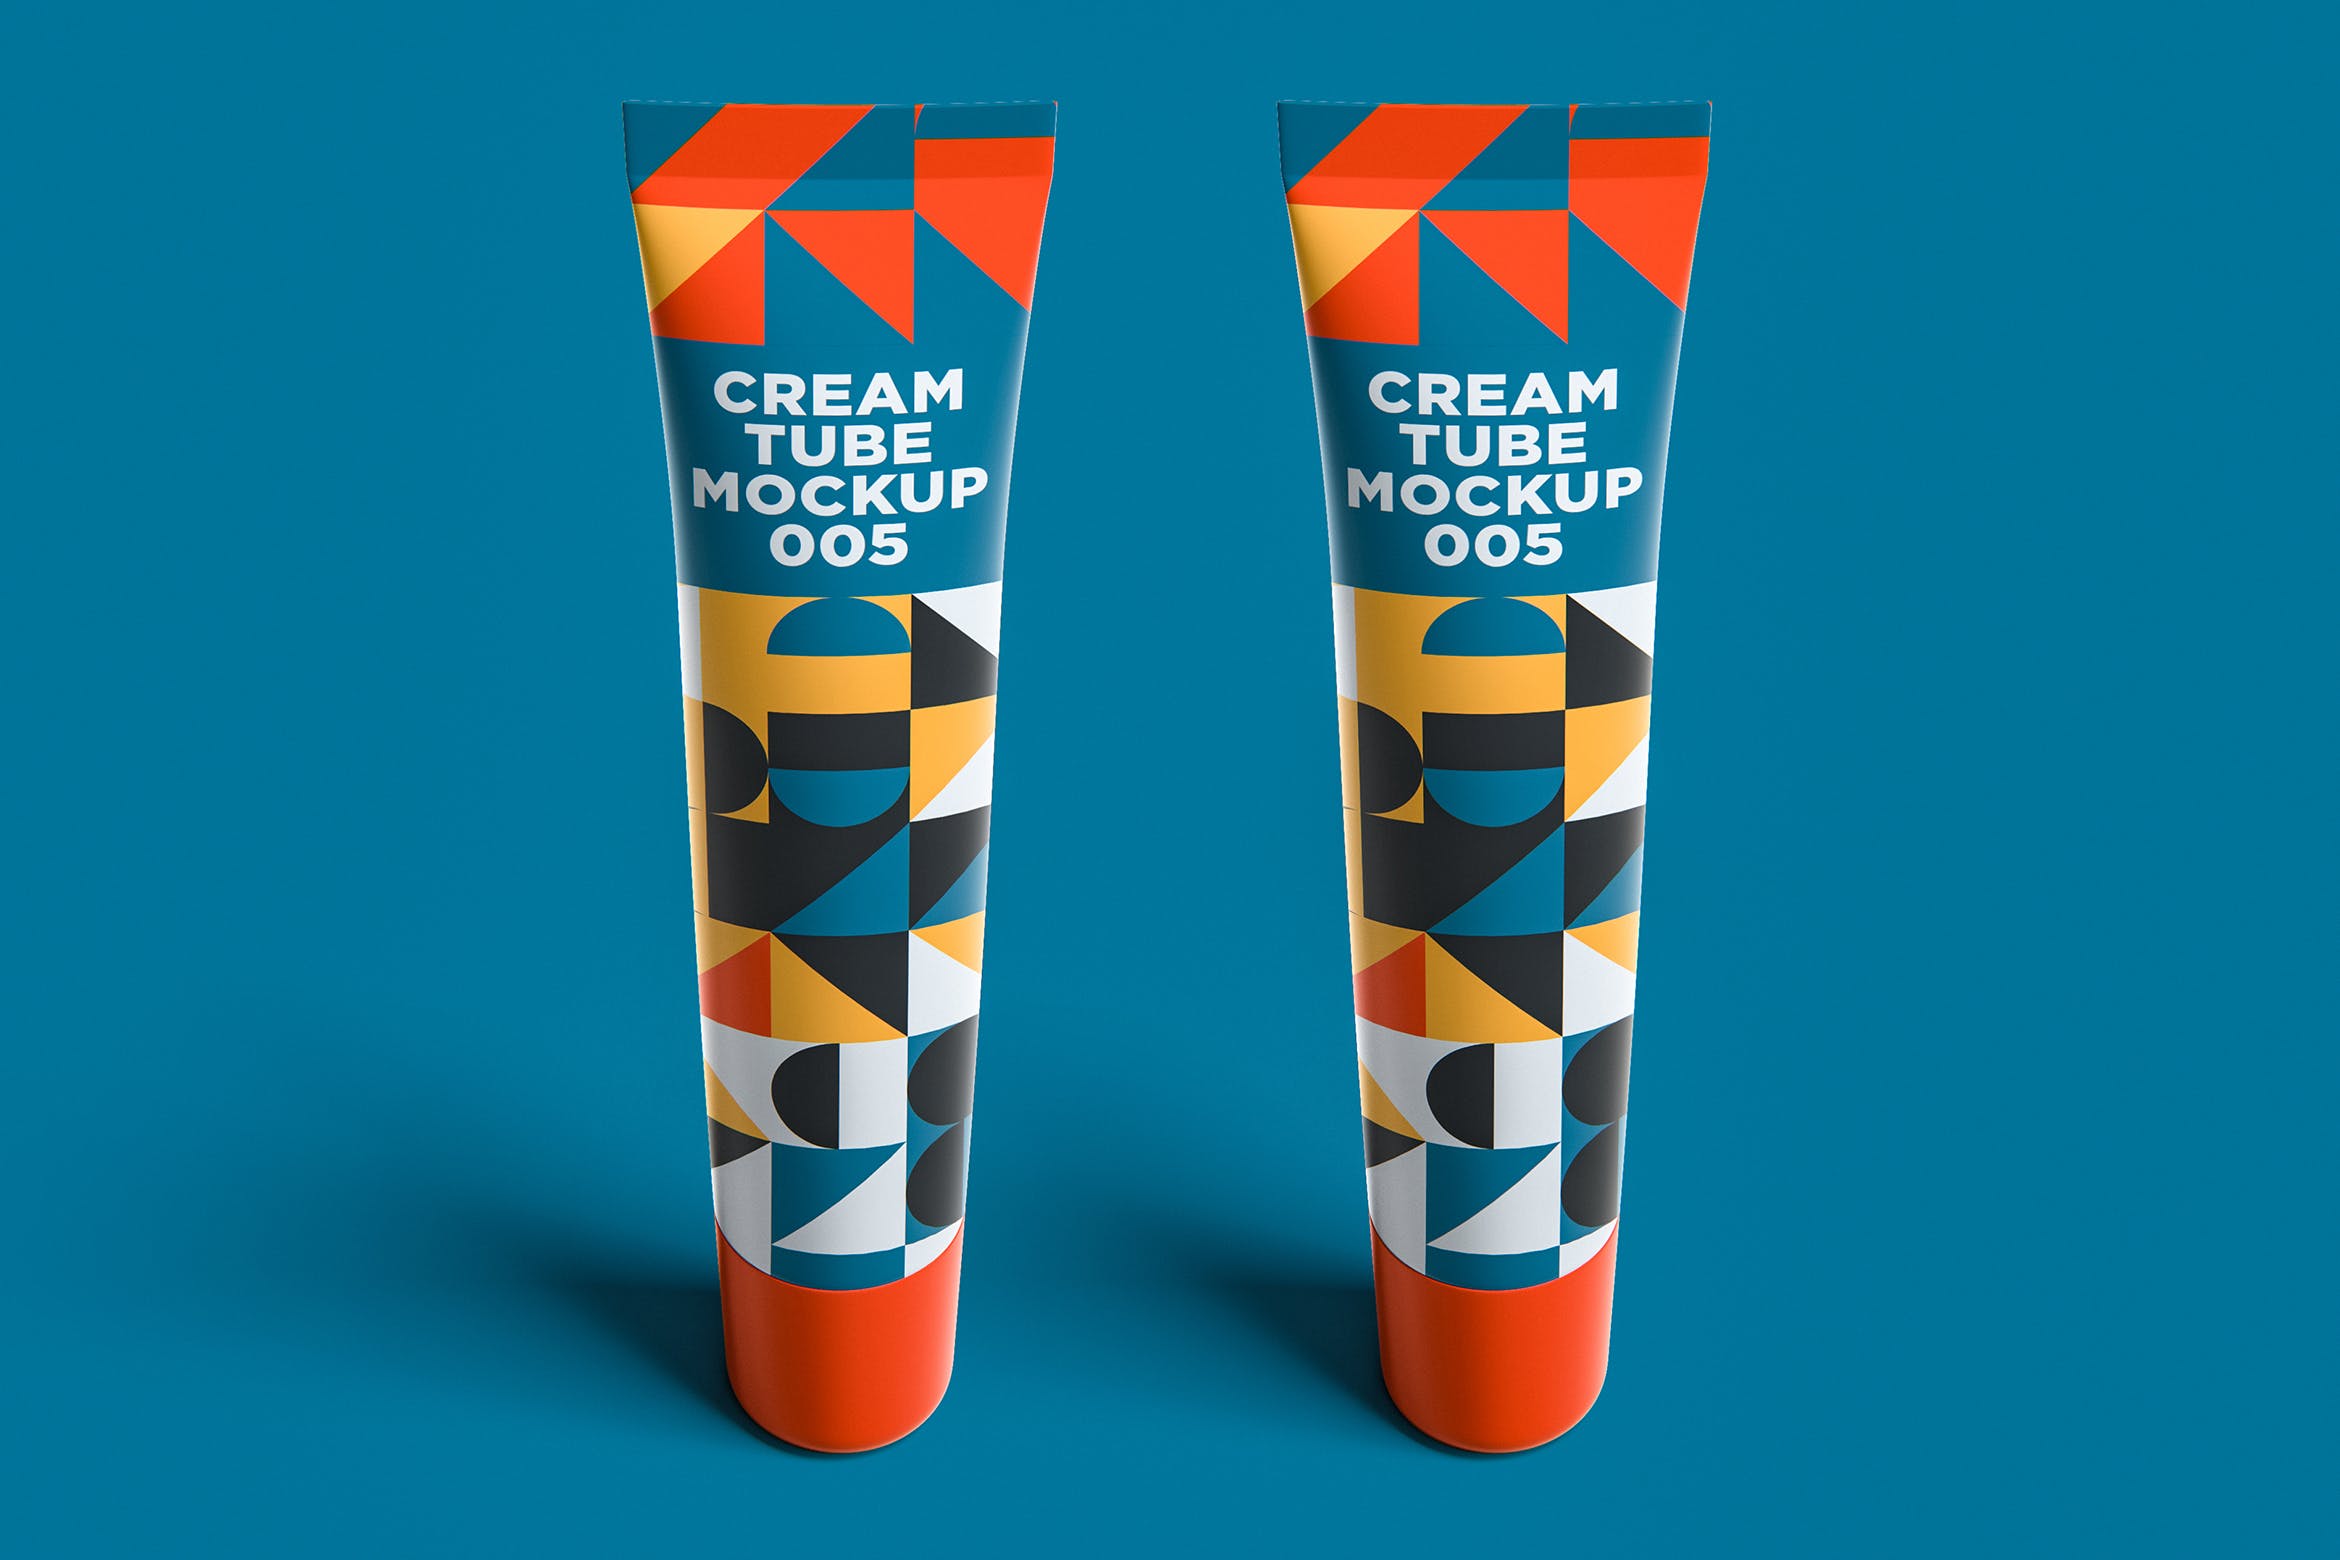 护肤品化妆品包装软管外观设计样机模板v5 Cream Tube Mockup 005设计素材模板